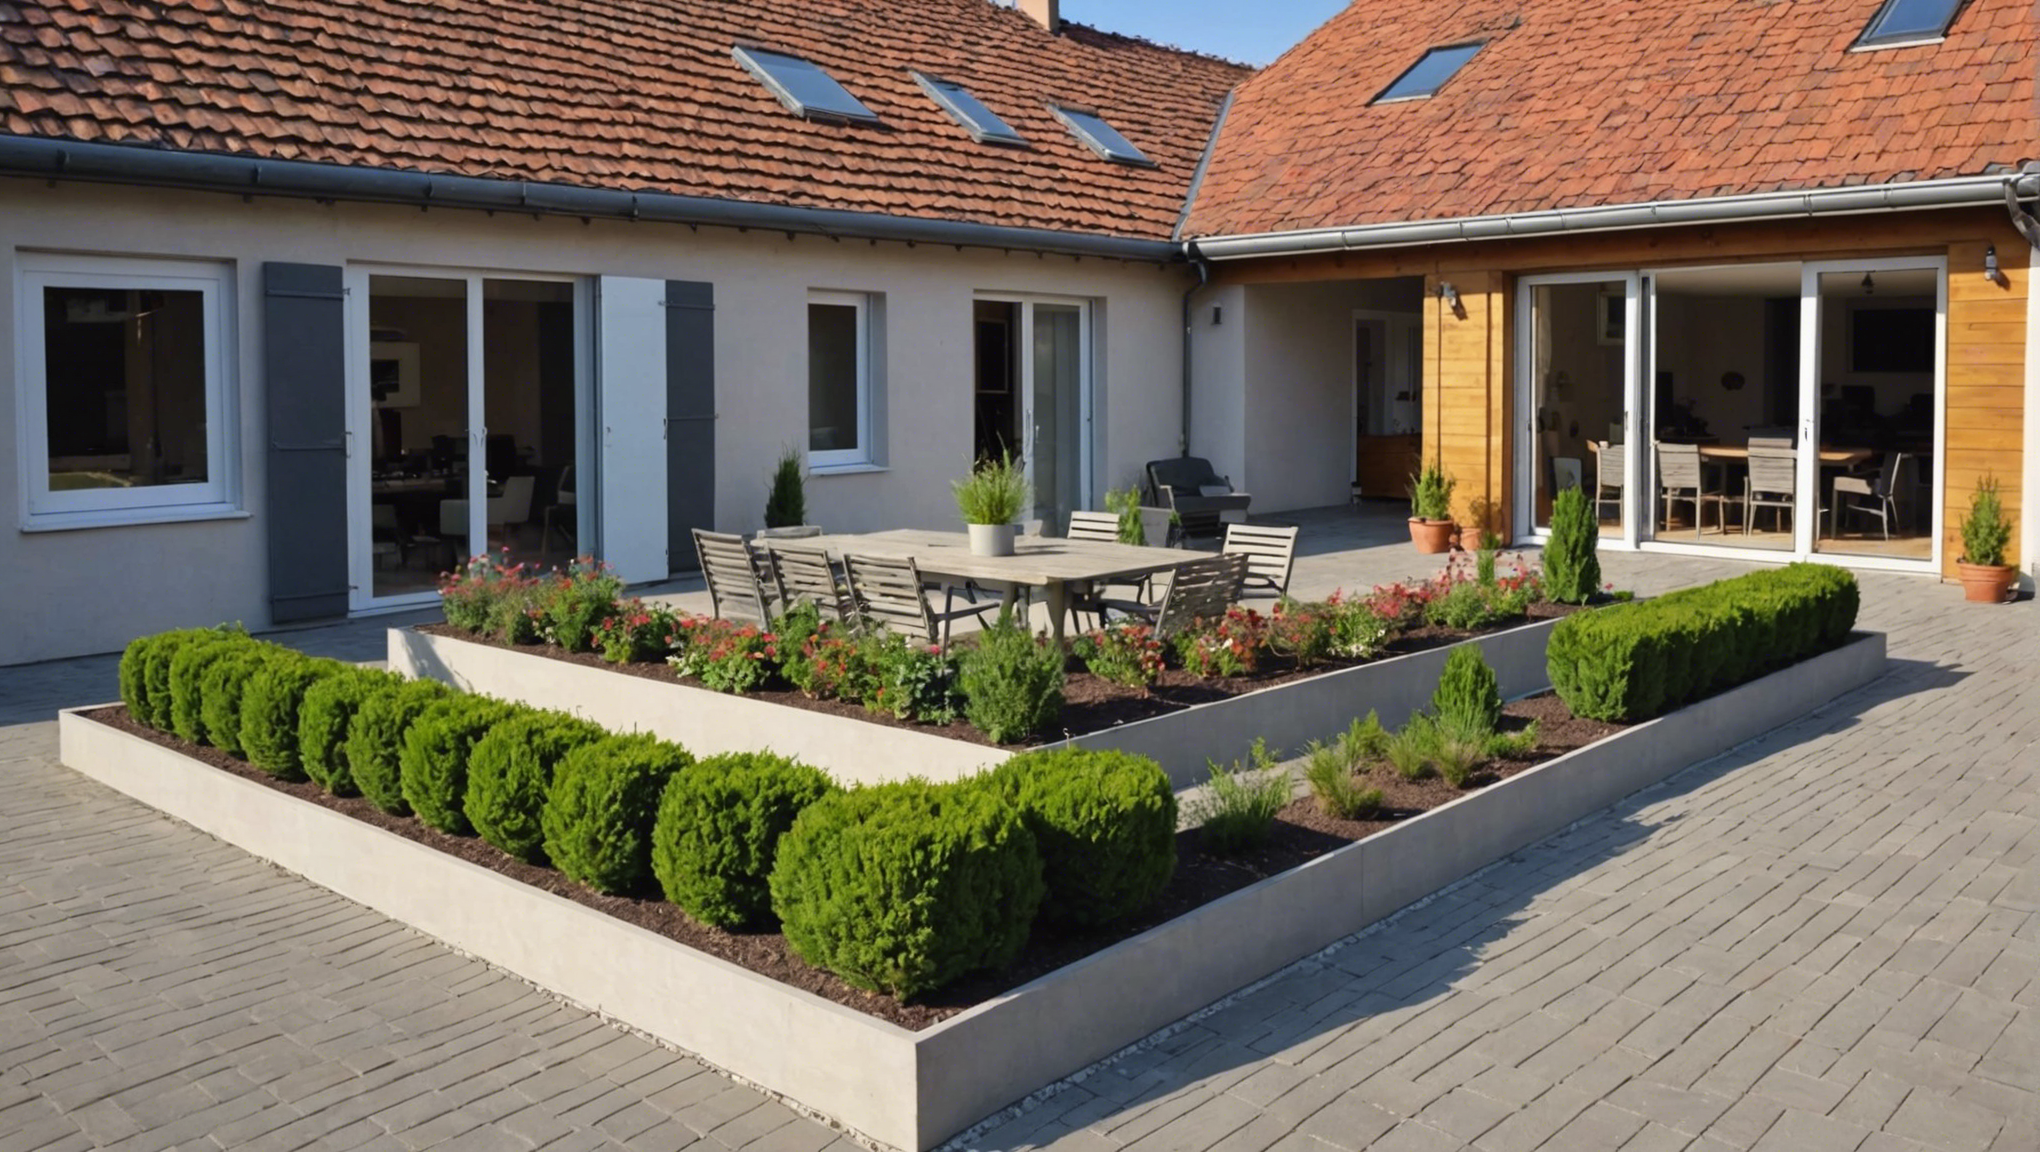 service de terrassement pour la construction de maisons à strasbourg. expert en préparation de terrain, nivellement et exc...